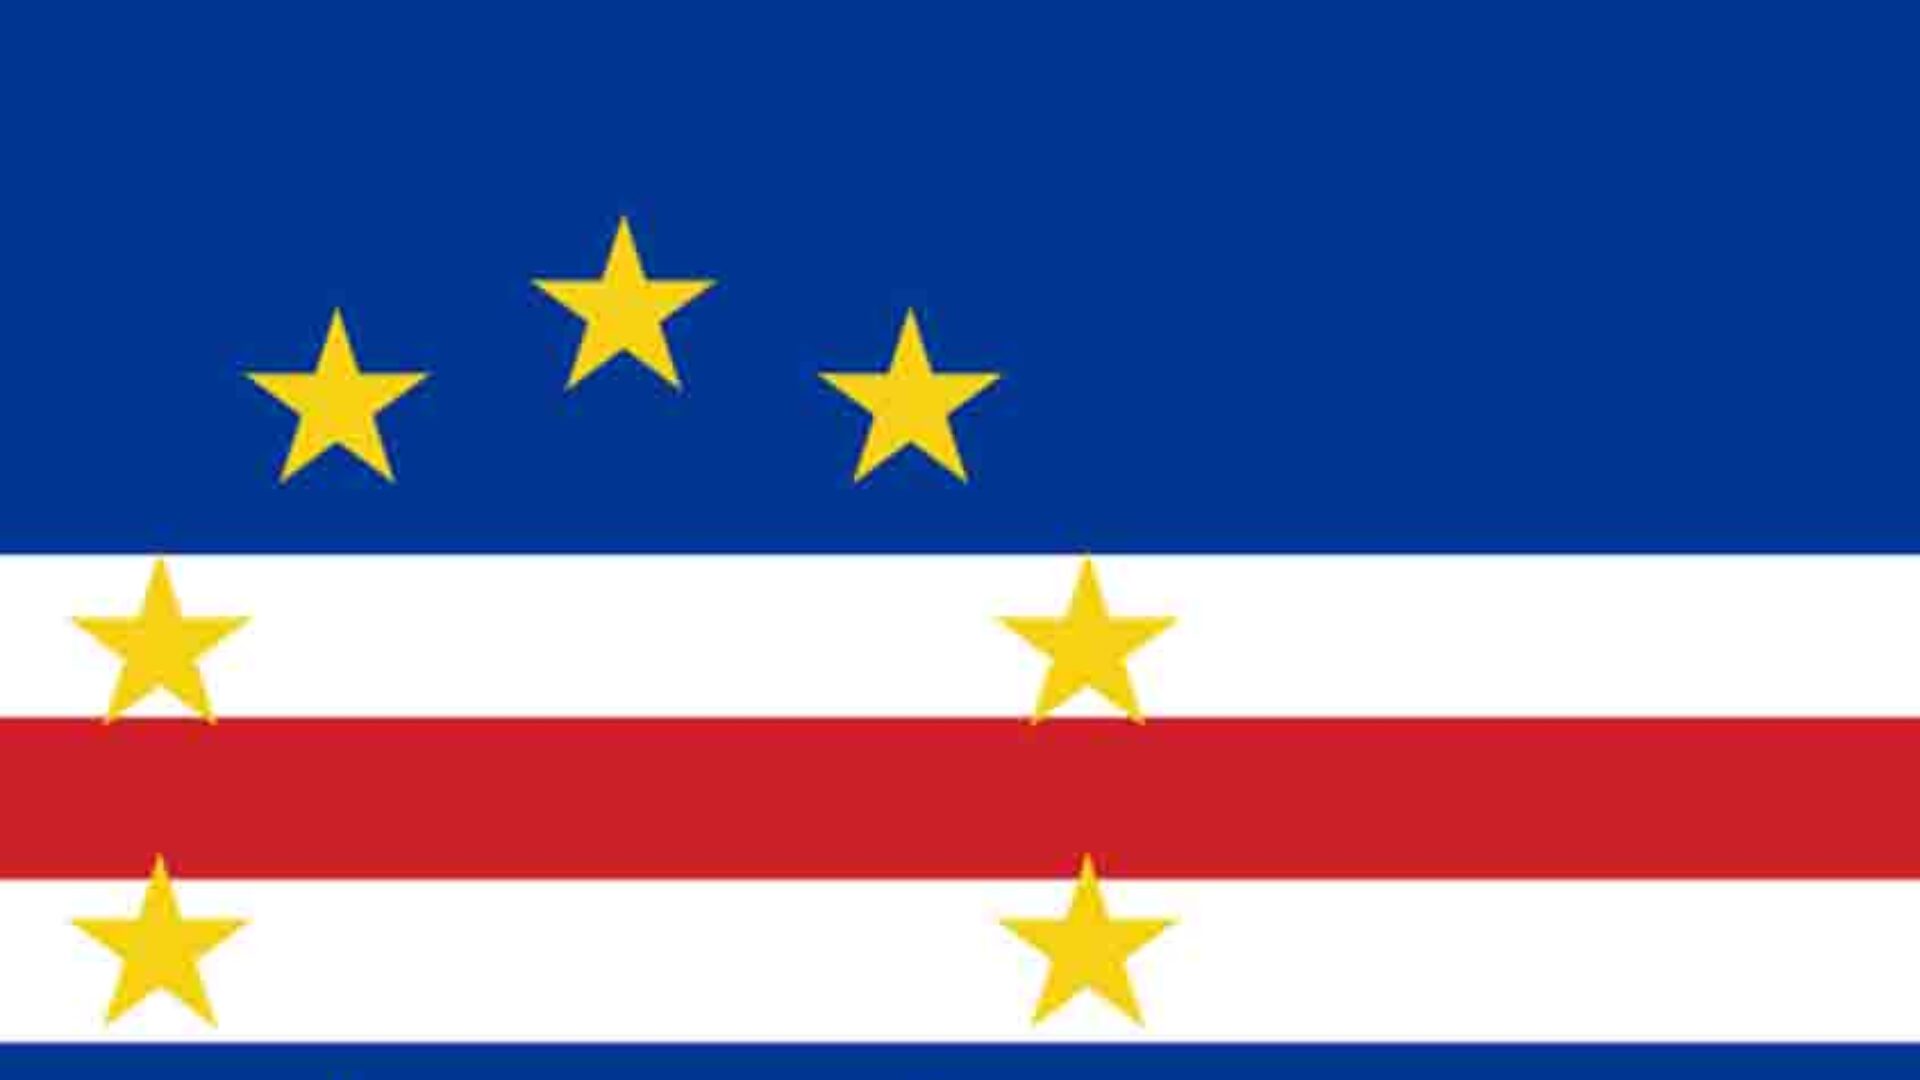 Eleições Legislativas de Cabo Verde realizam-se domingo, 18 de abril